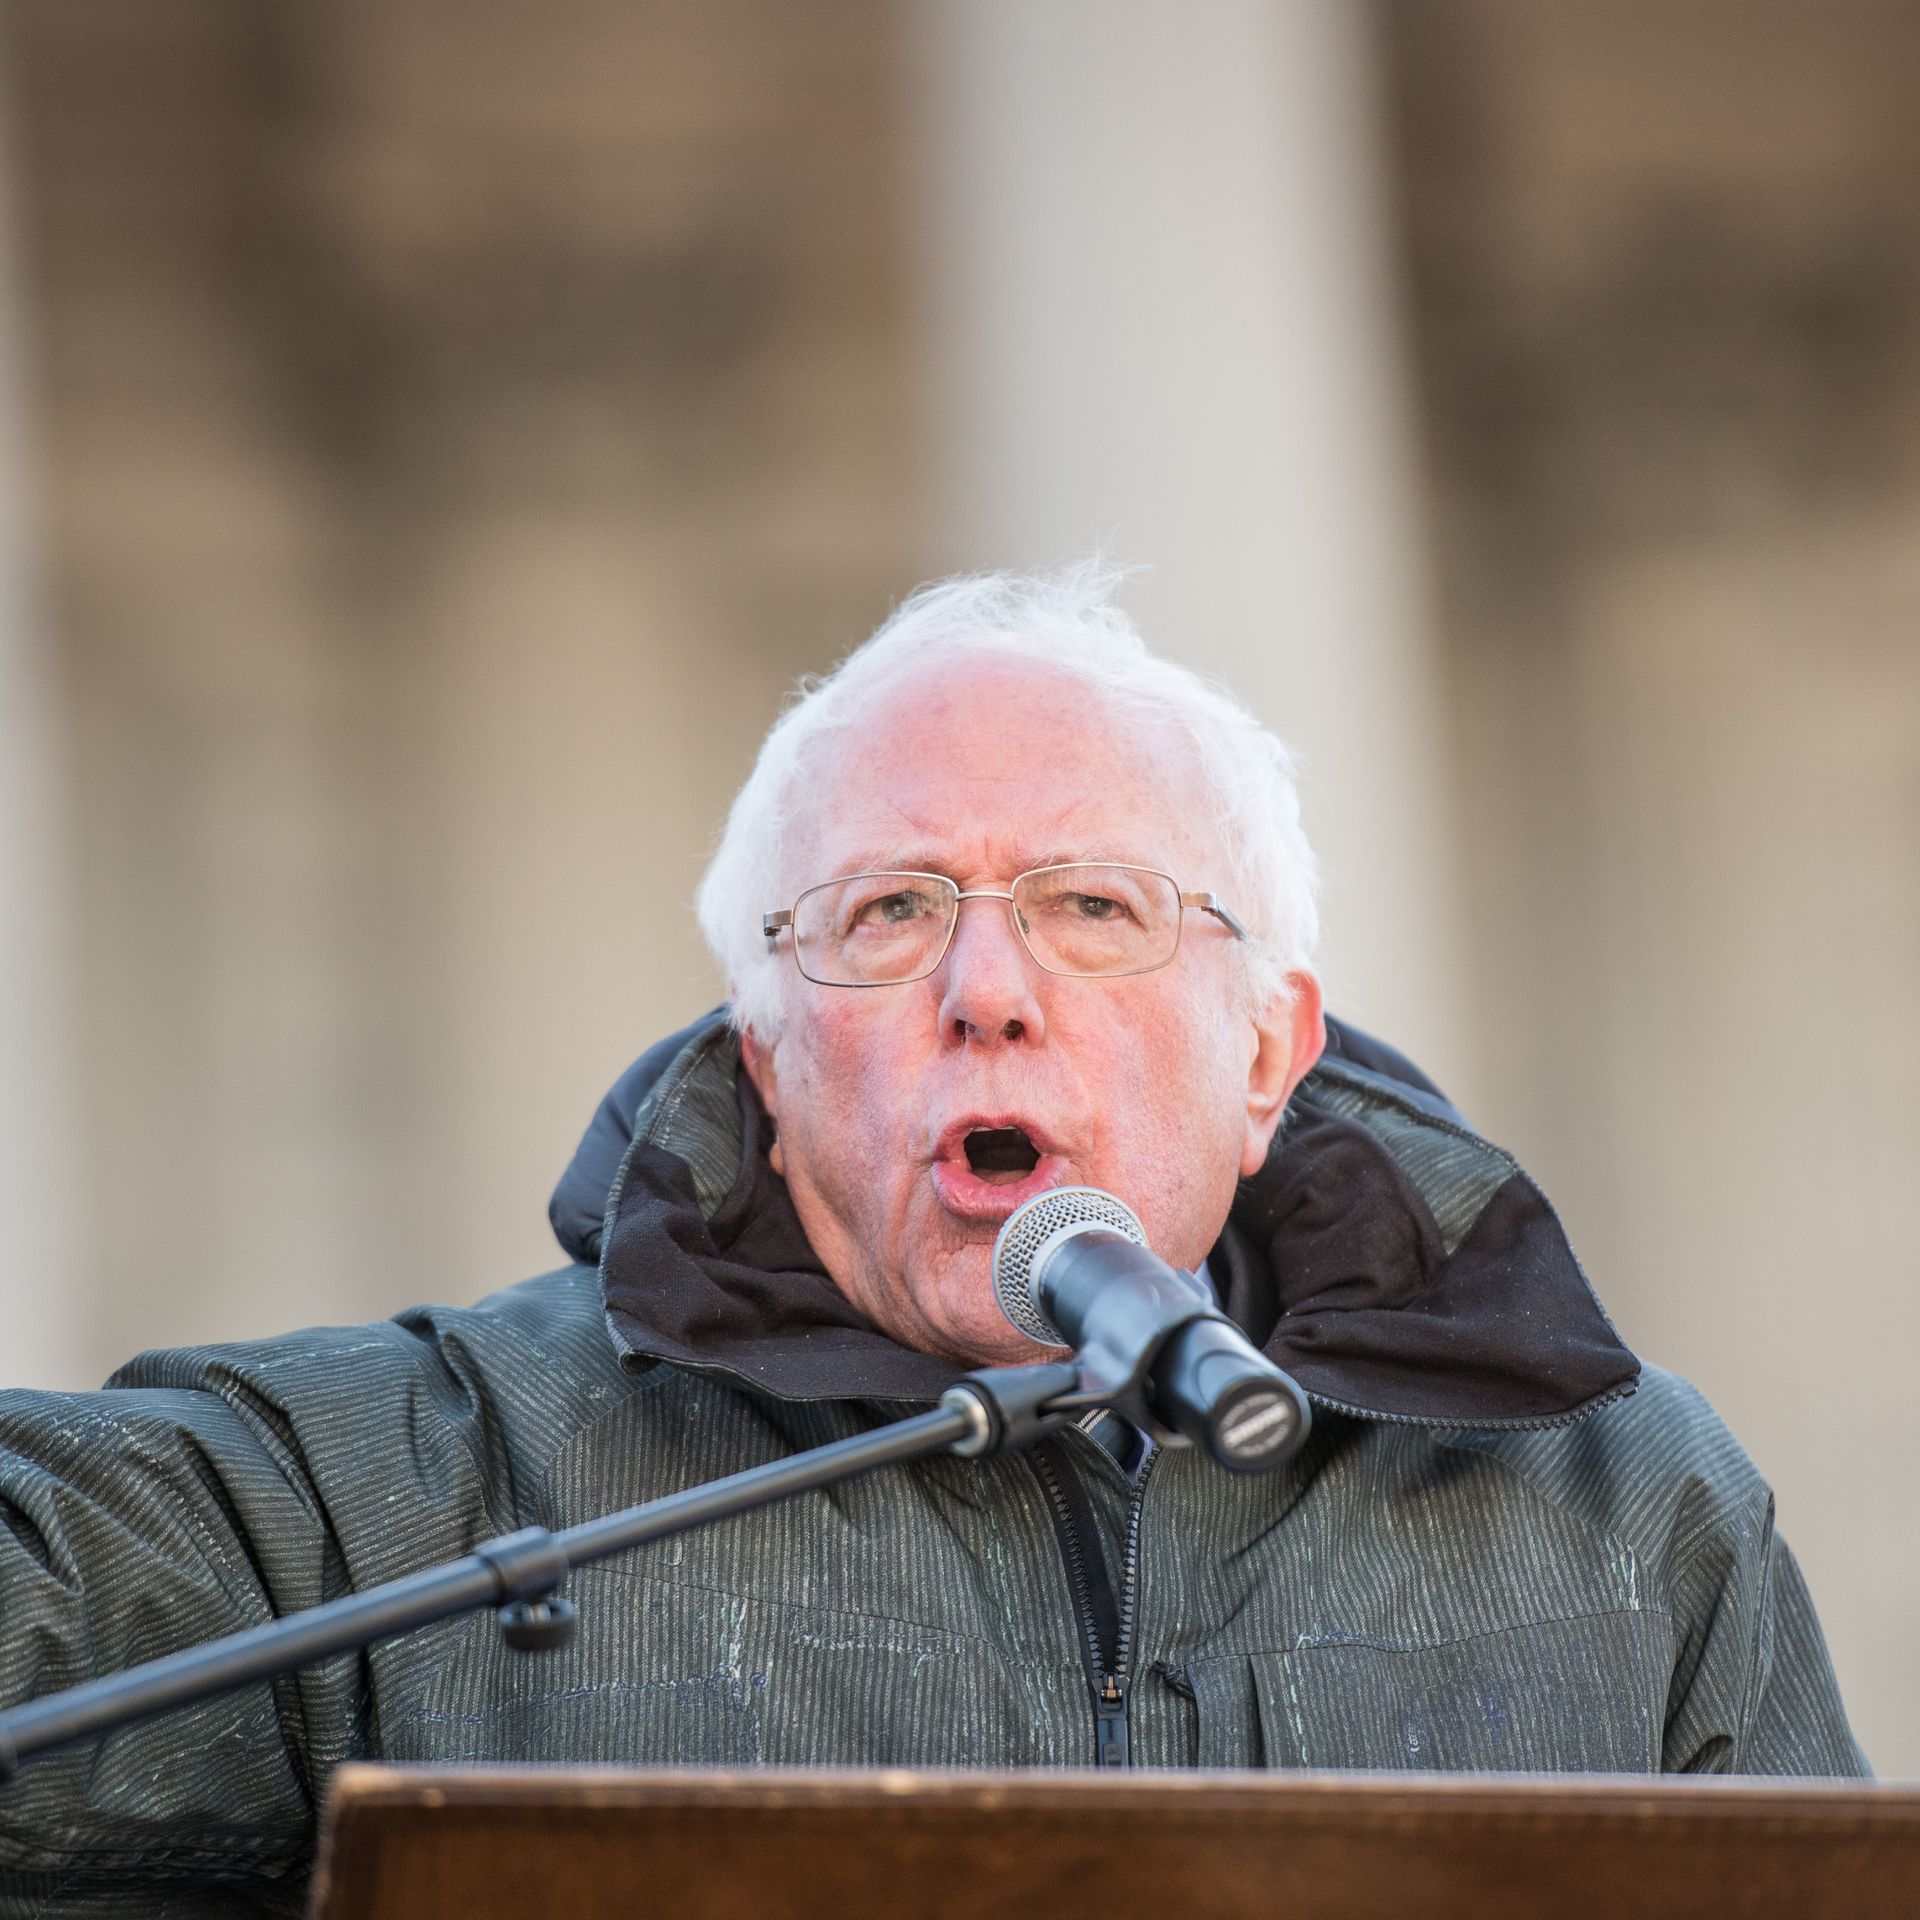 Bernie Sanders speaks at a podium